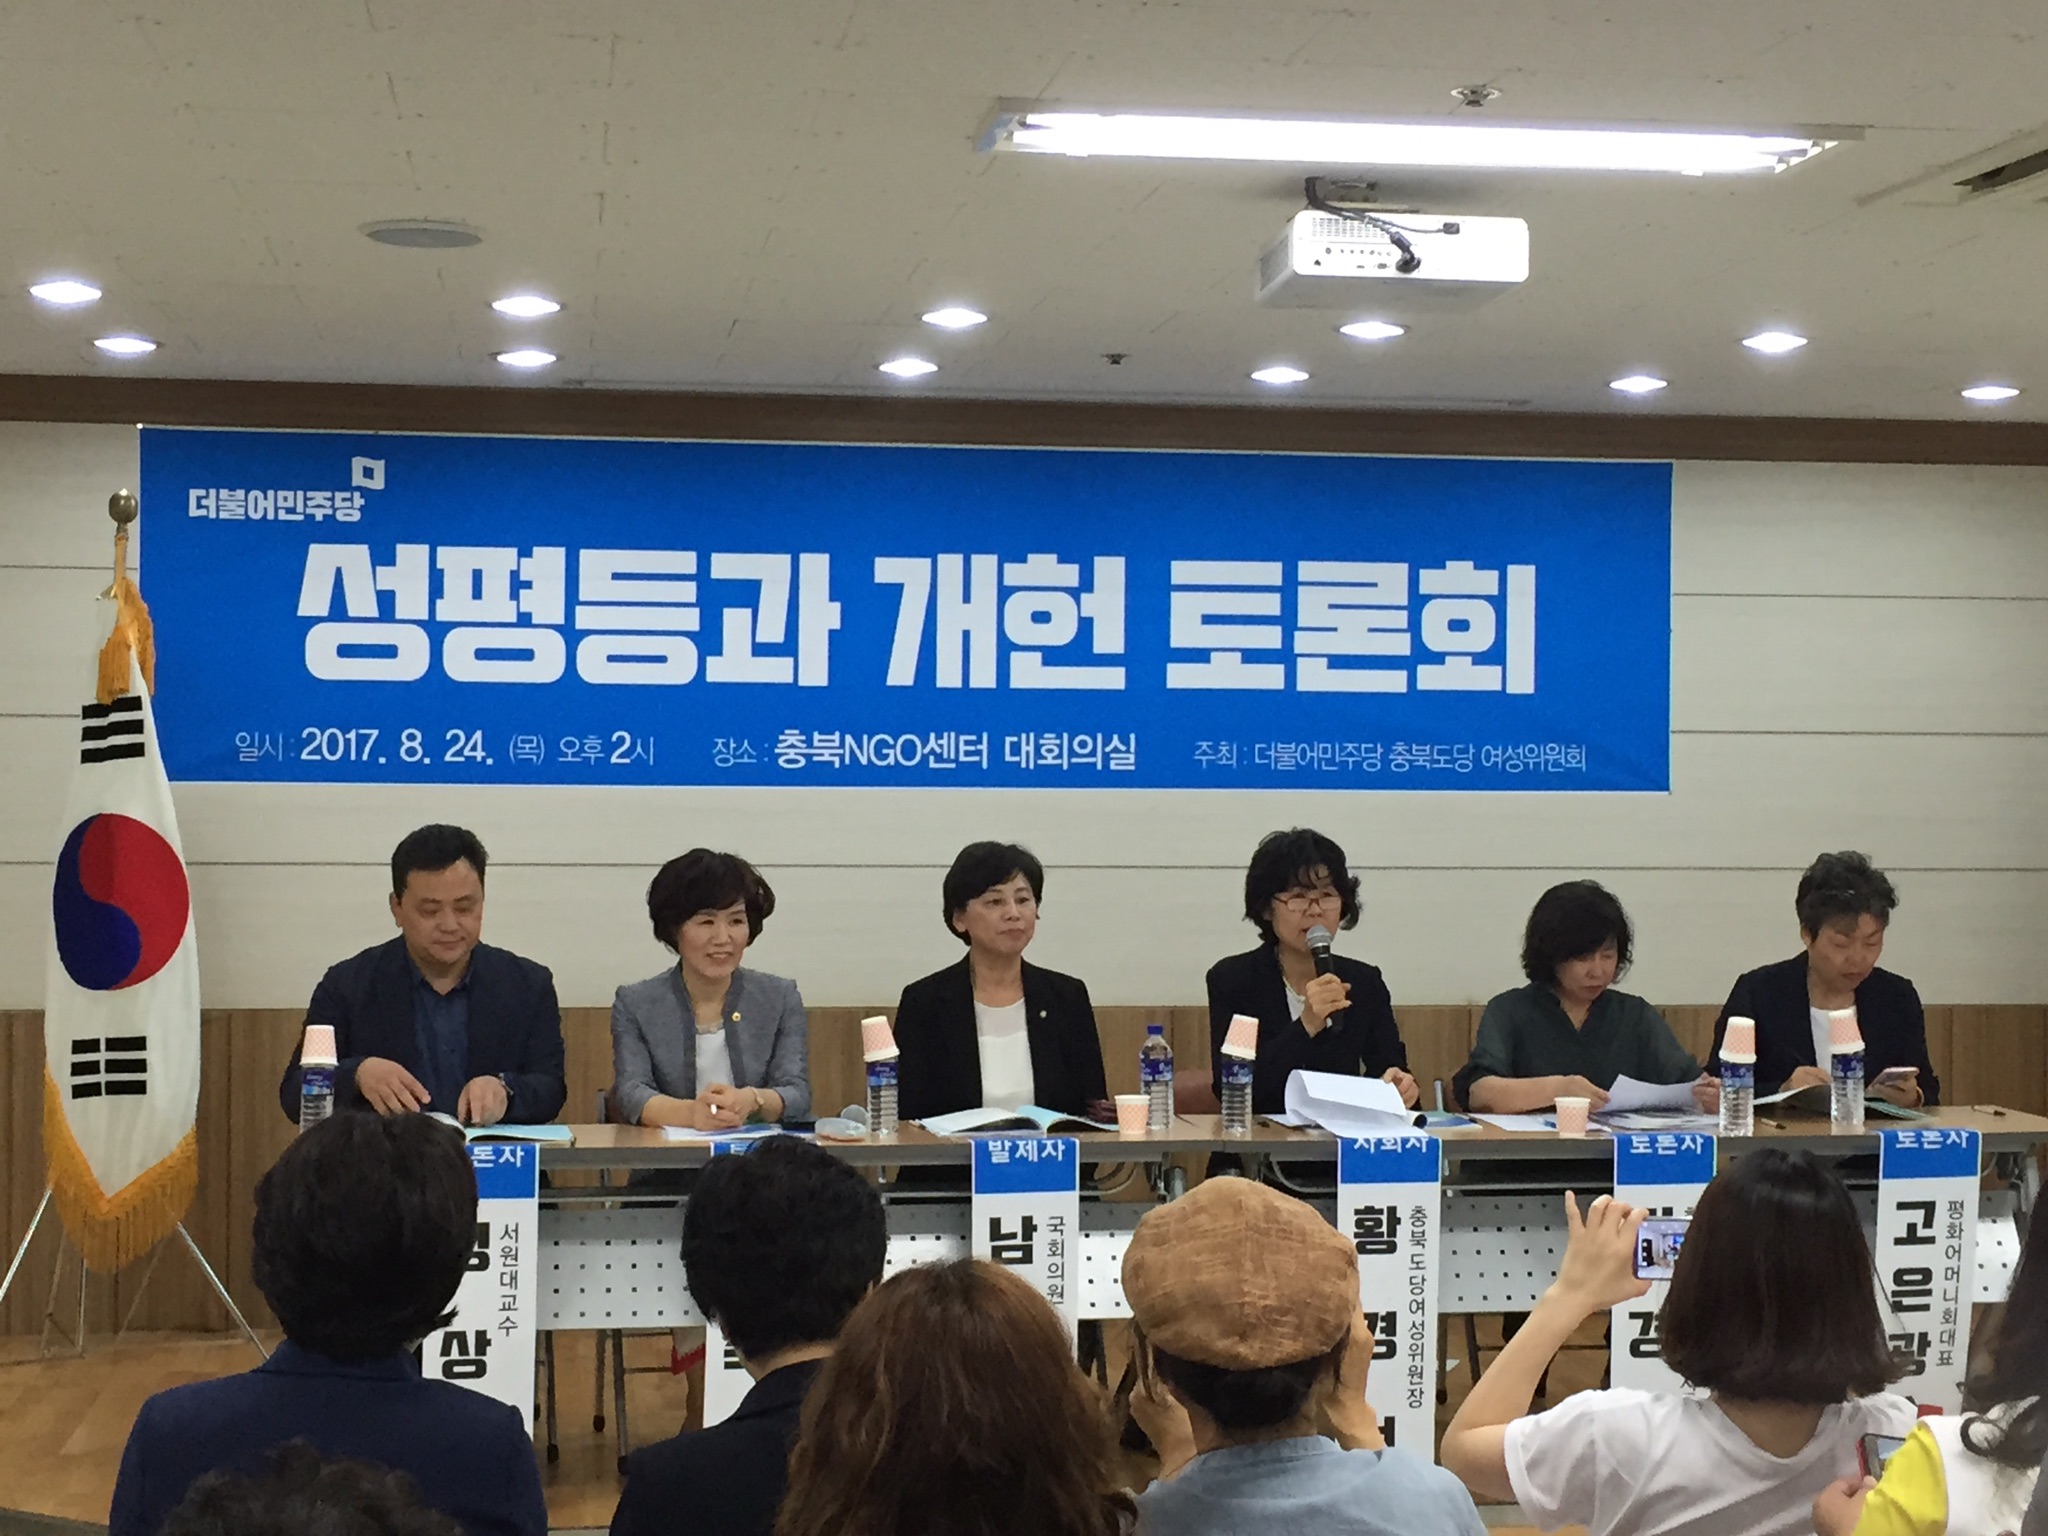 이숙애 도의원, 성평등 실현을 위한 개헌 토론회 참석 - 1